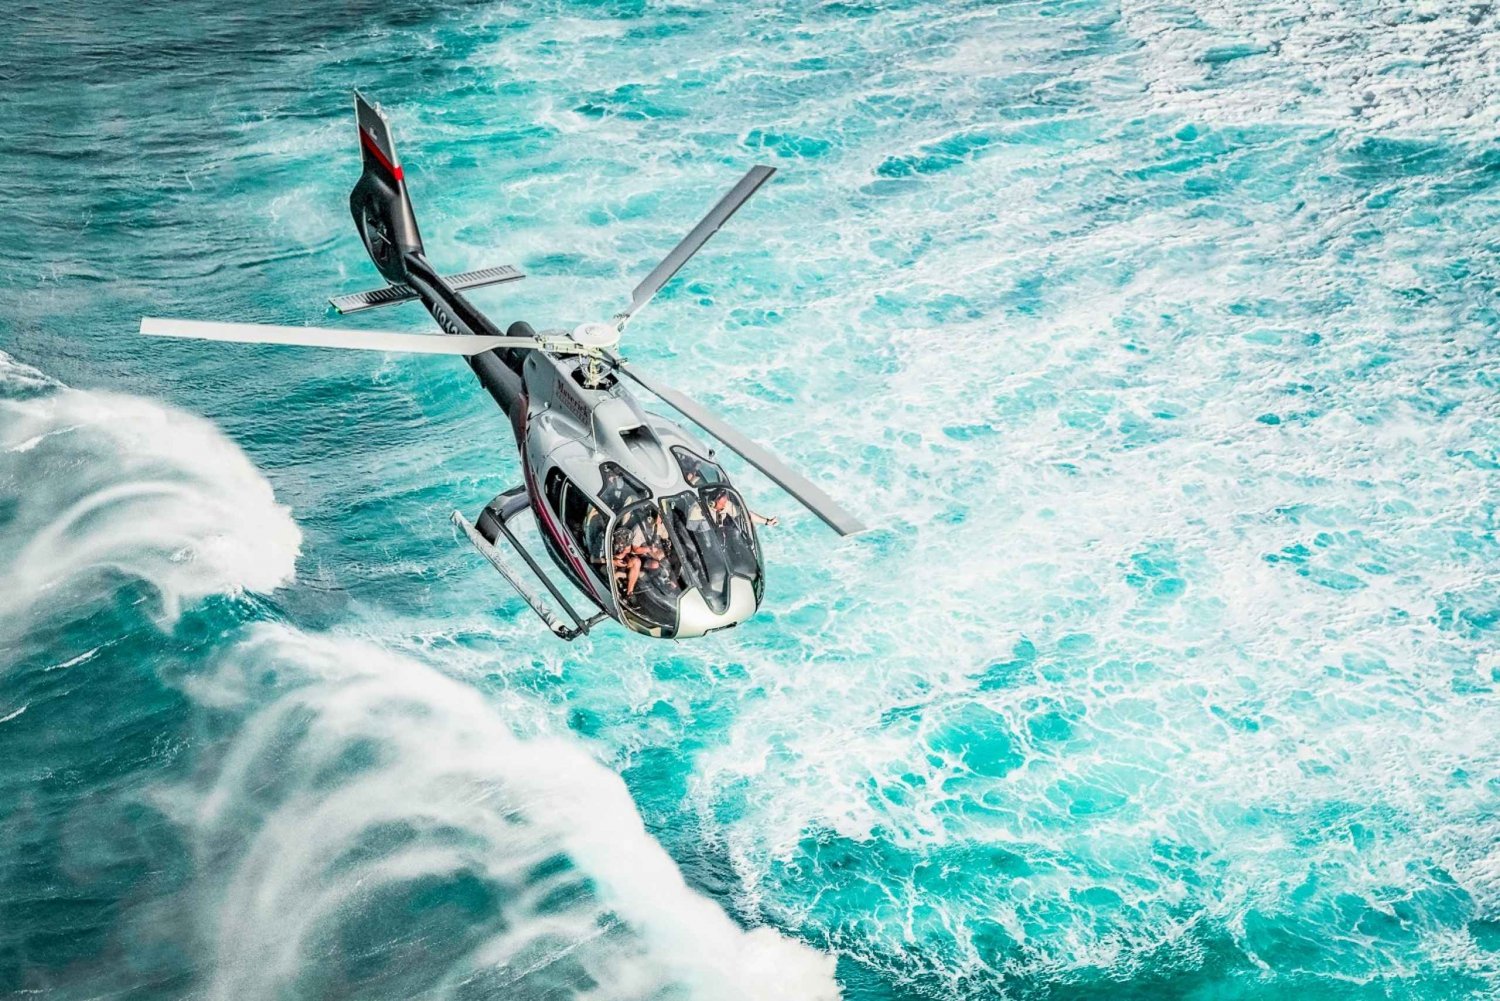 Maui: Ruta a Hana en Helicóptero y Excursión a las Cascadas con Aterrizaje